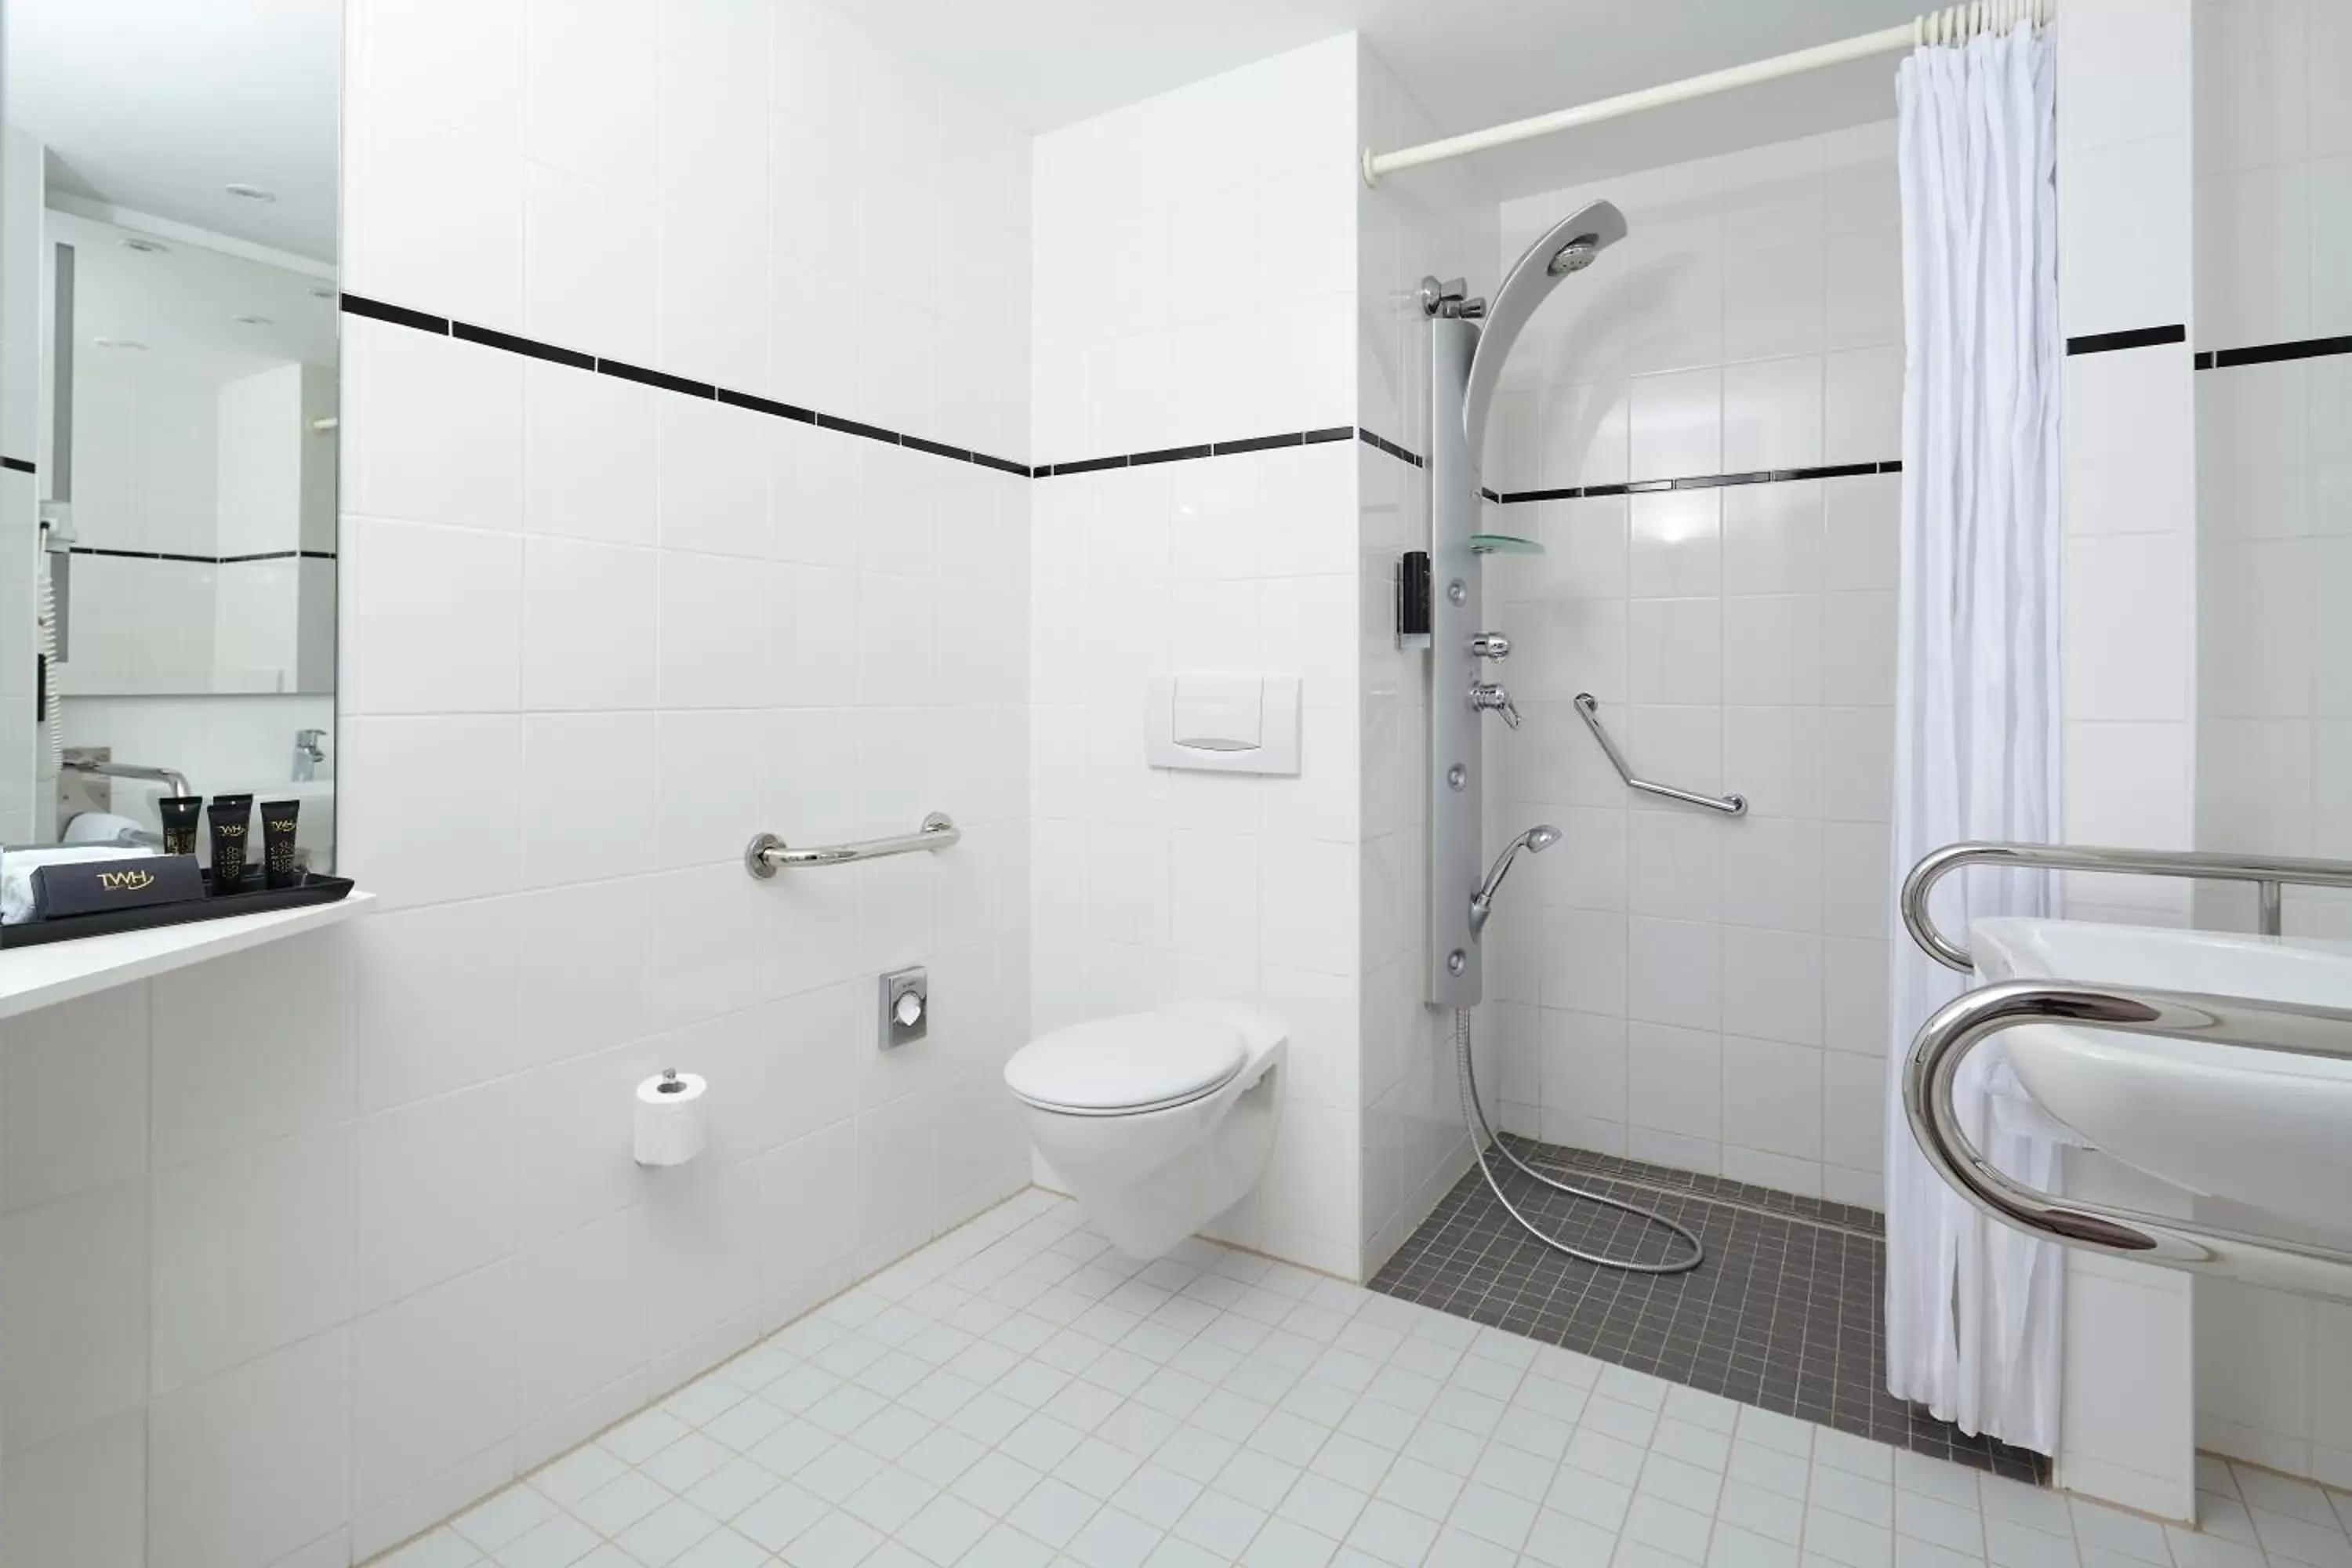 Shower, Bathroom in Trans World Hotel Kranichhöhe